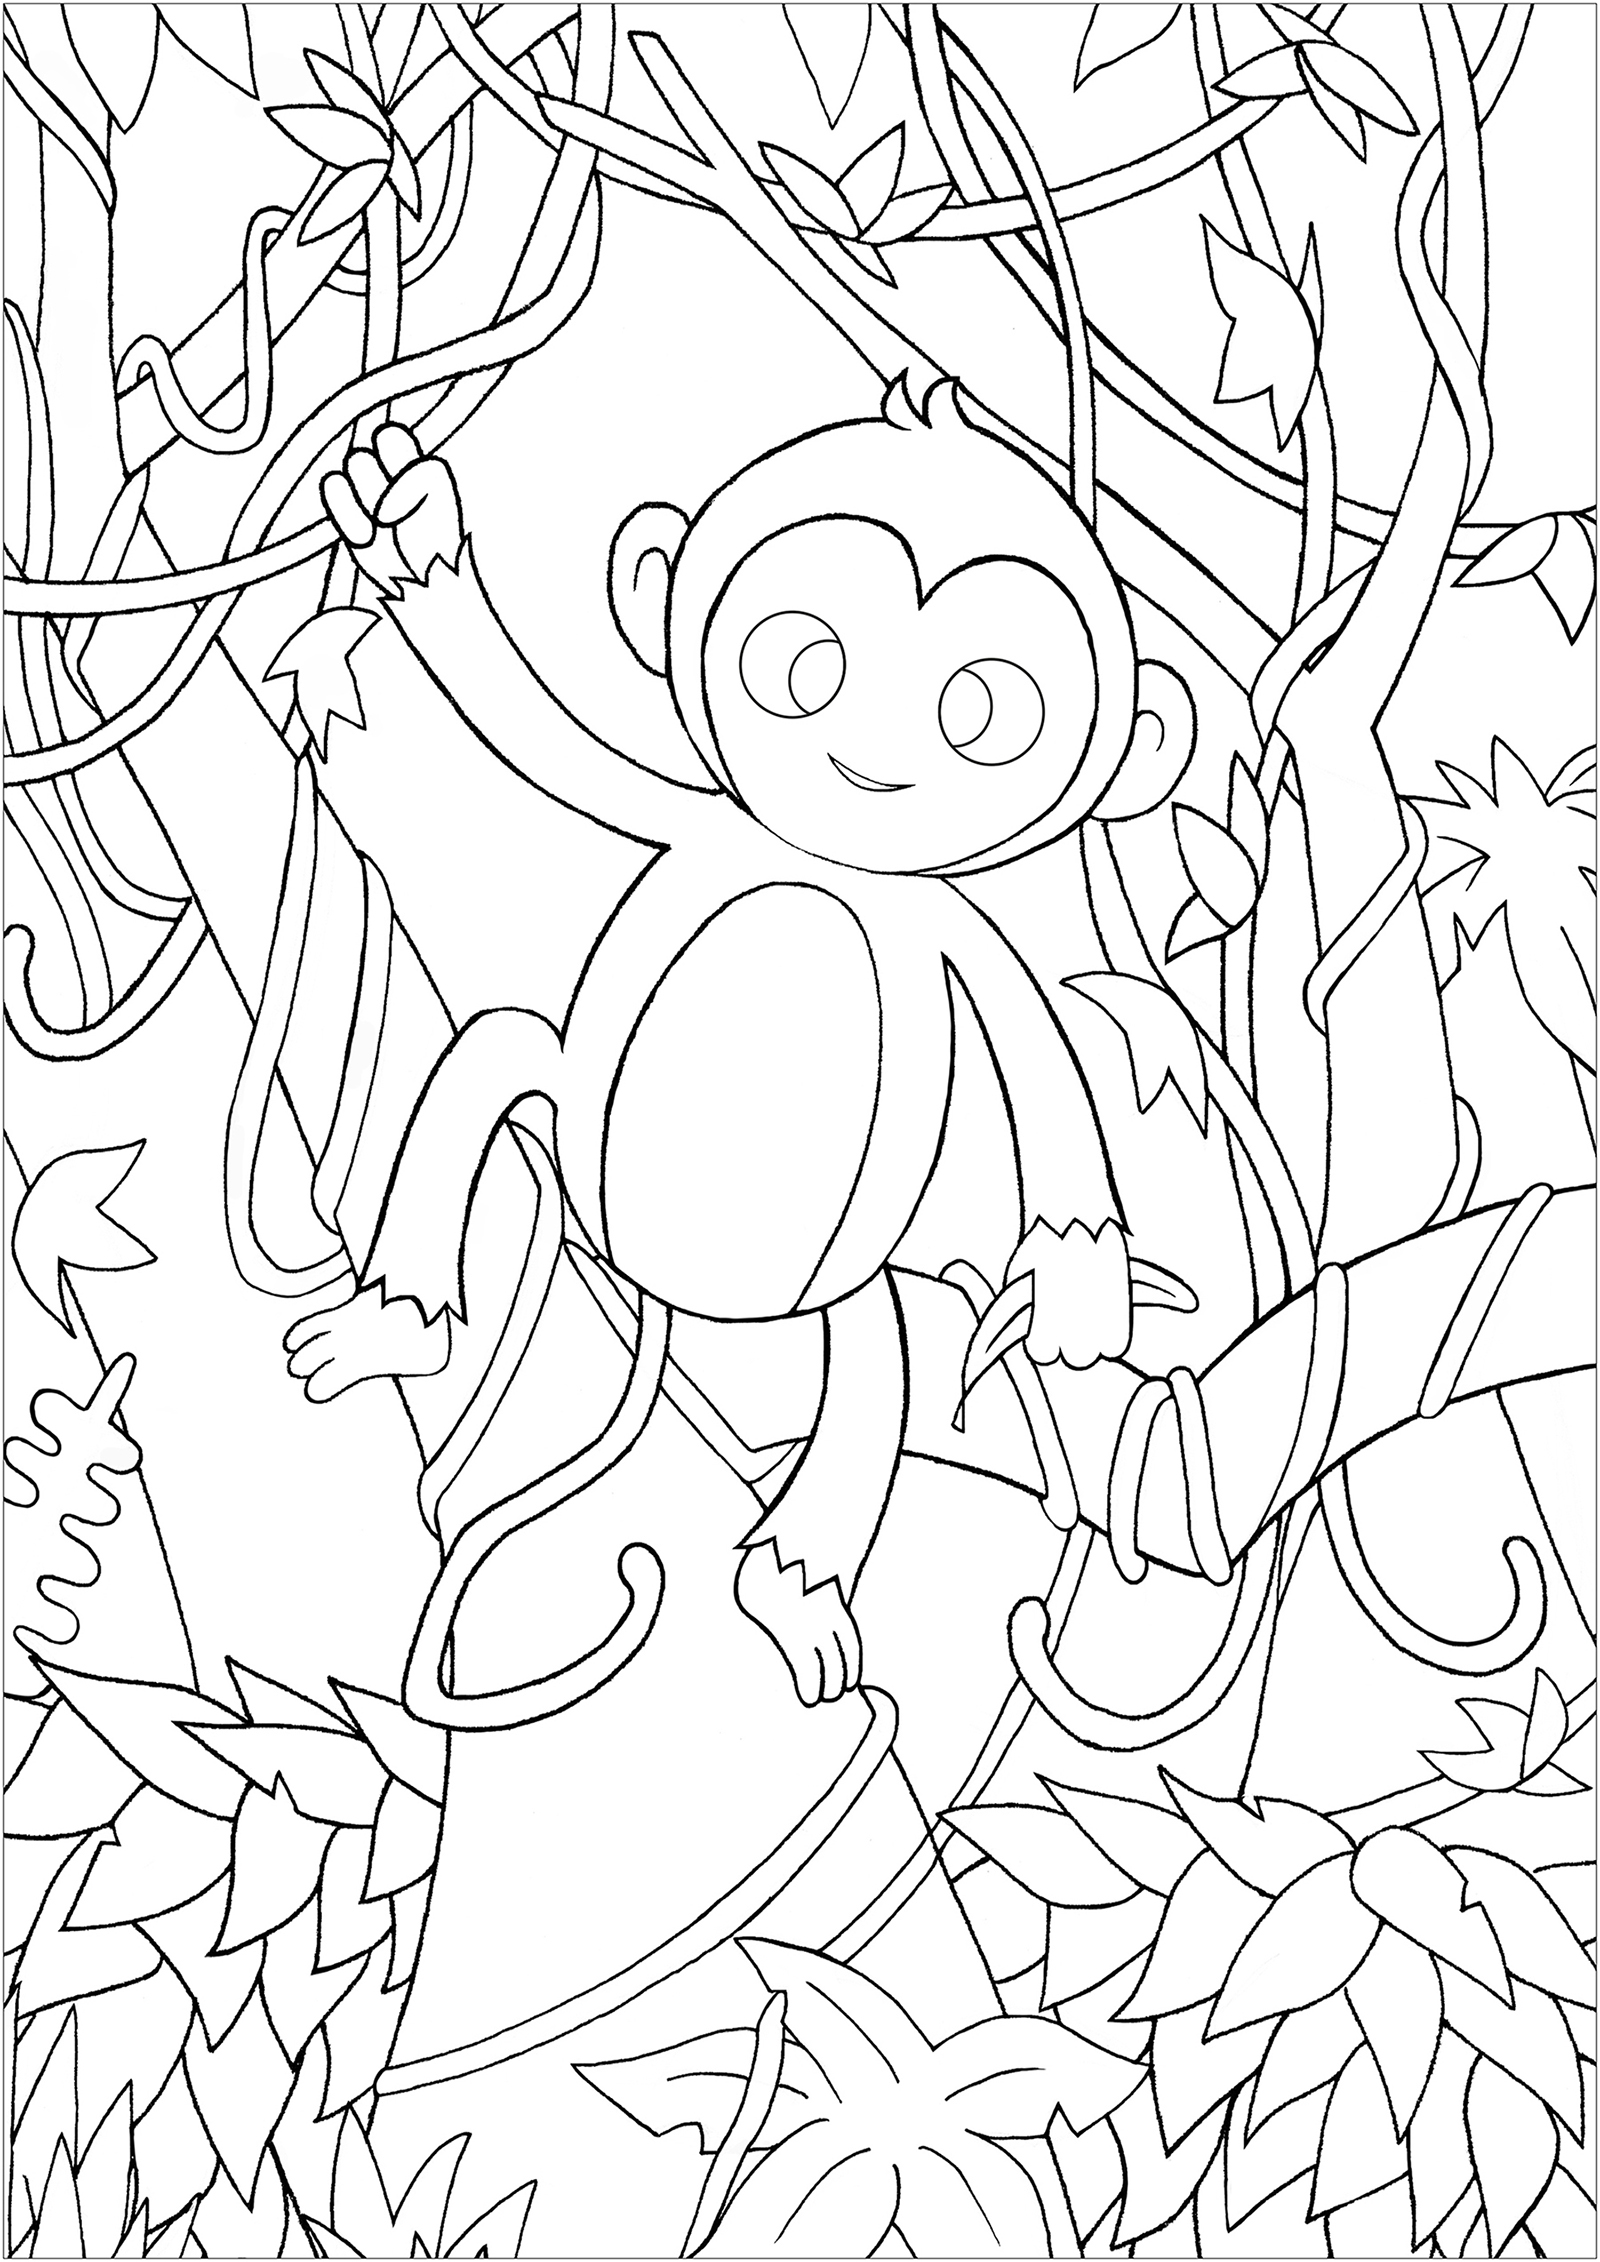 Coloriez ce gentil singe dans la forêt, se baladant de liane en liane